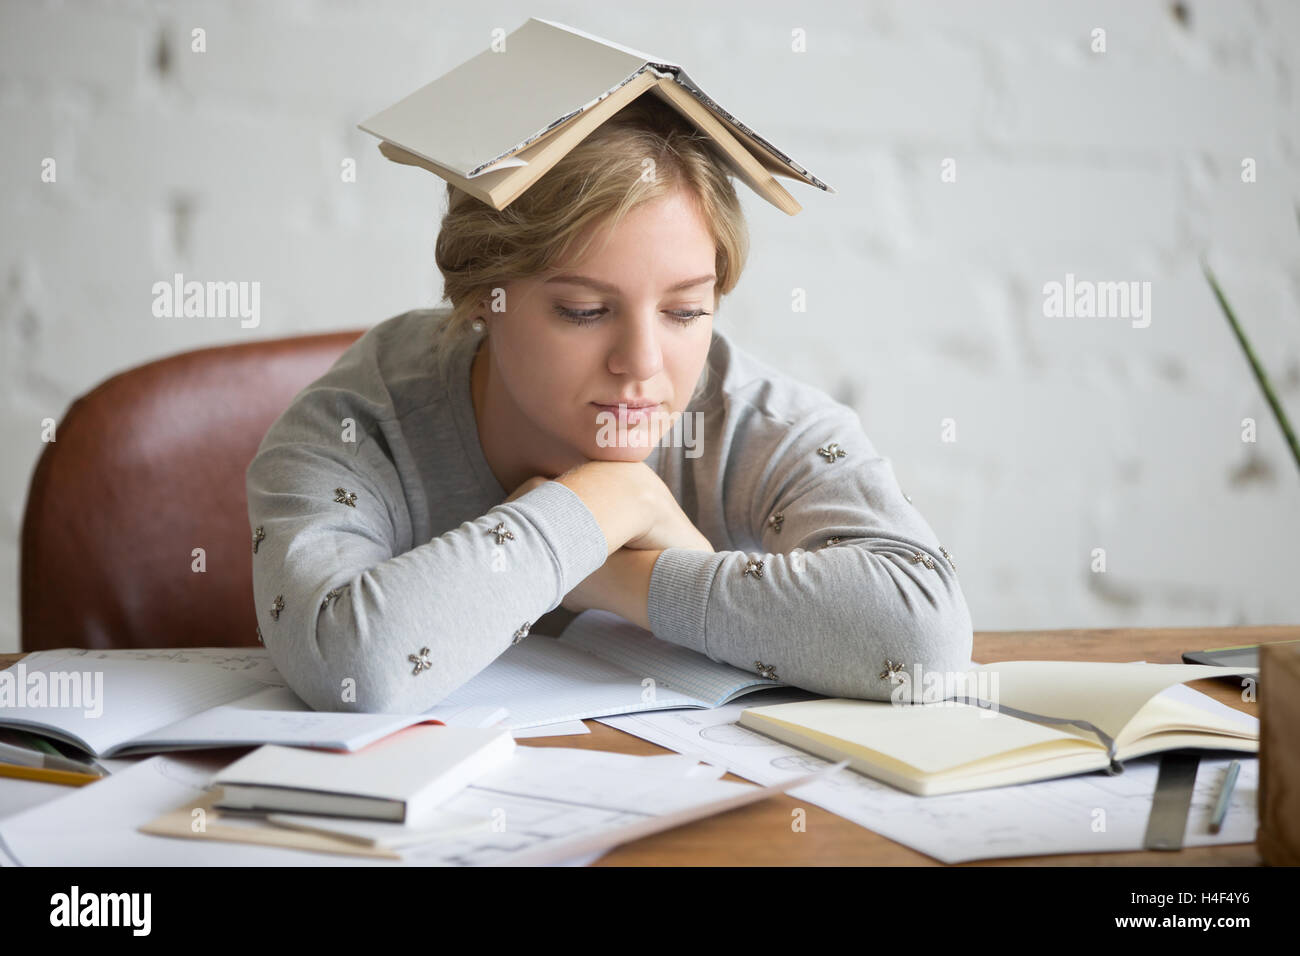 Portrait de jeune fille étudiante avec livre ouvert sur sa tête Banque D'Images